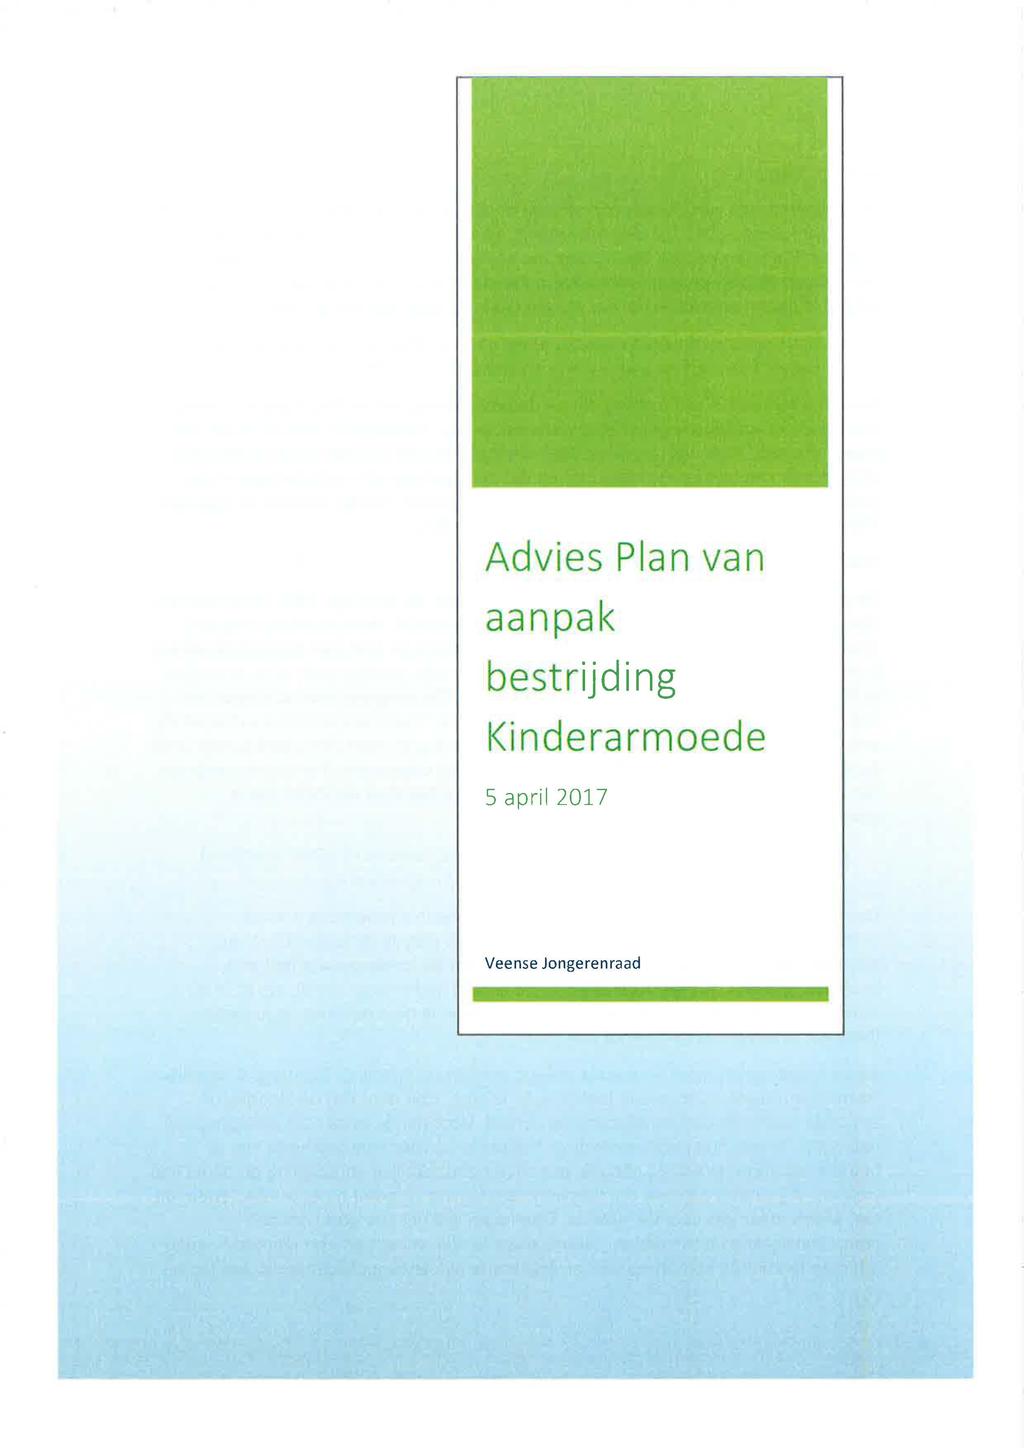 Advies Plan van aanpak bestrijding